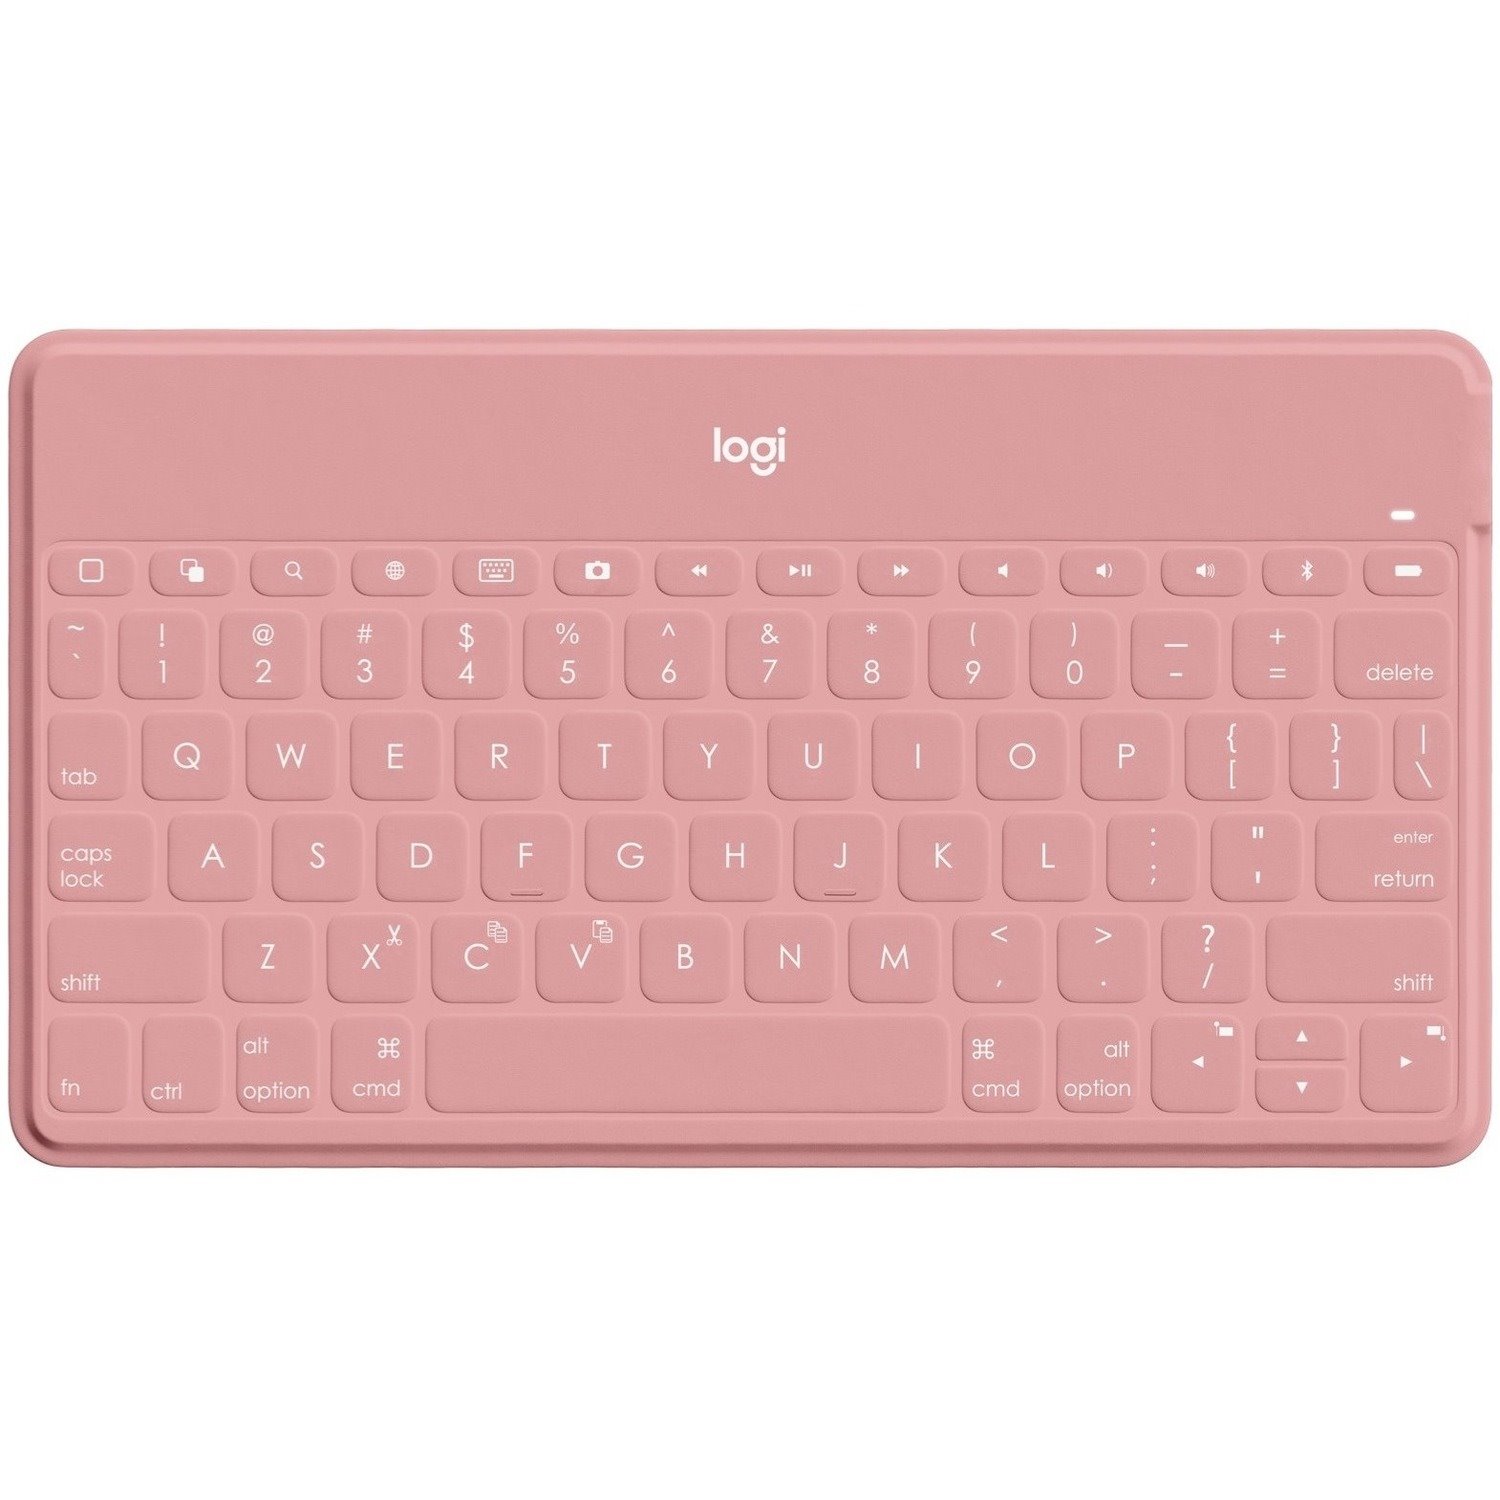 Logitech Keys-To-Go Keyboard - Wireless Connectivity - English (UK) - Blush Pink